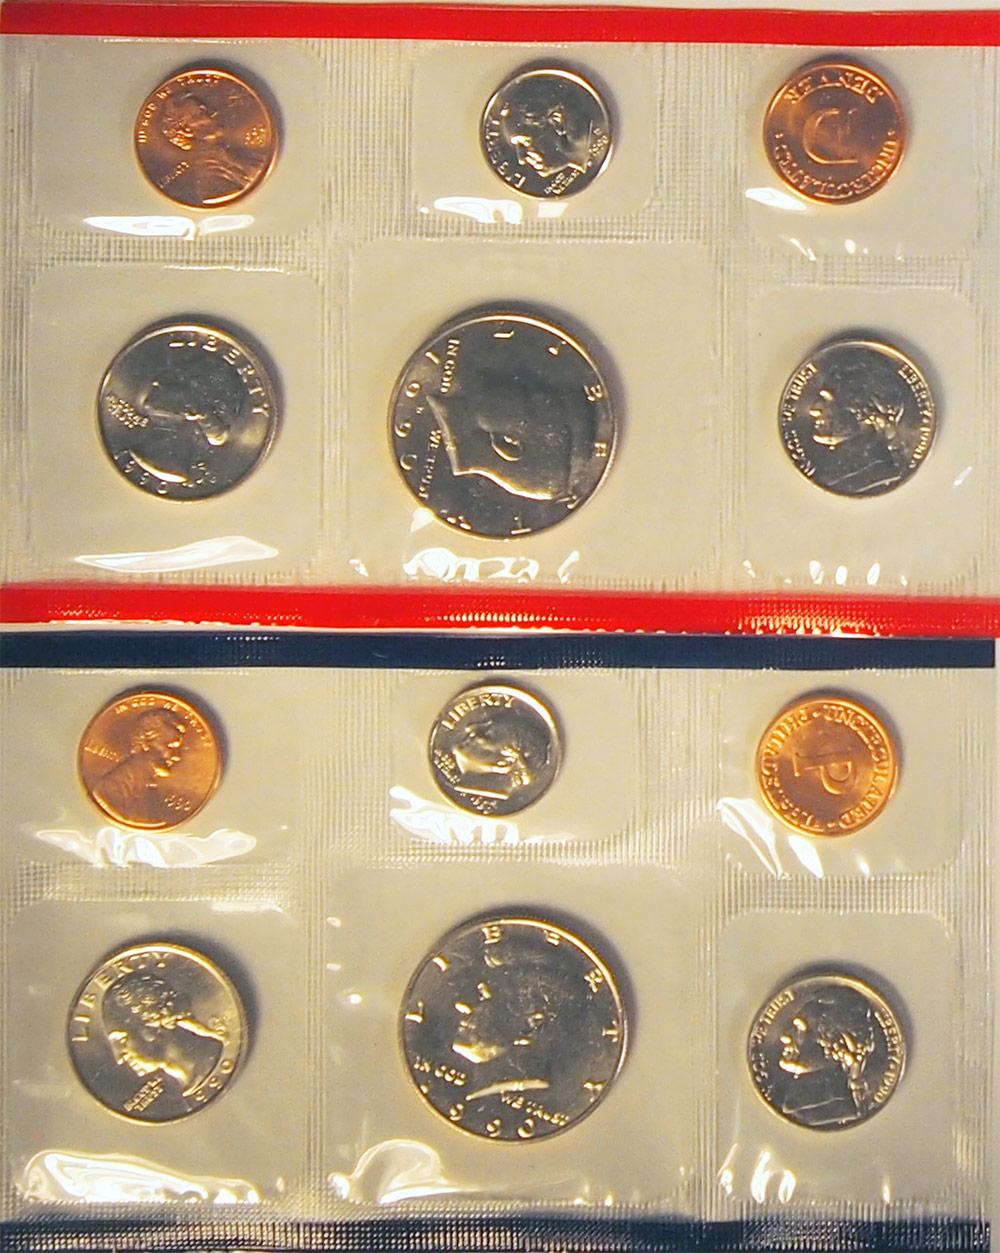 1990 Mint Set - All Original 10 Coin U.S. Mint Uncirculated Set